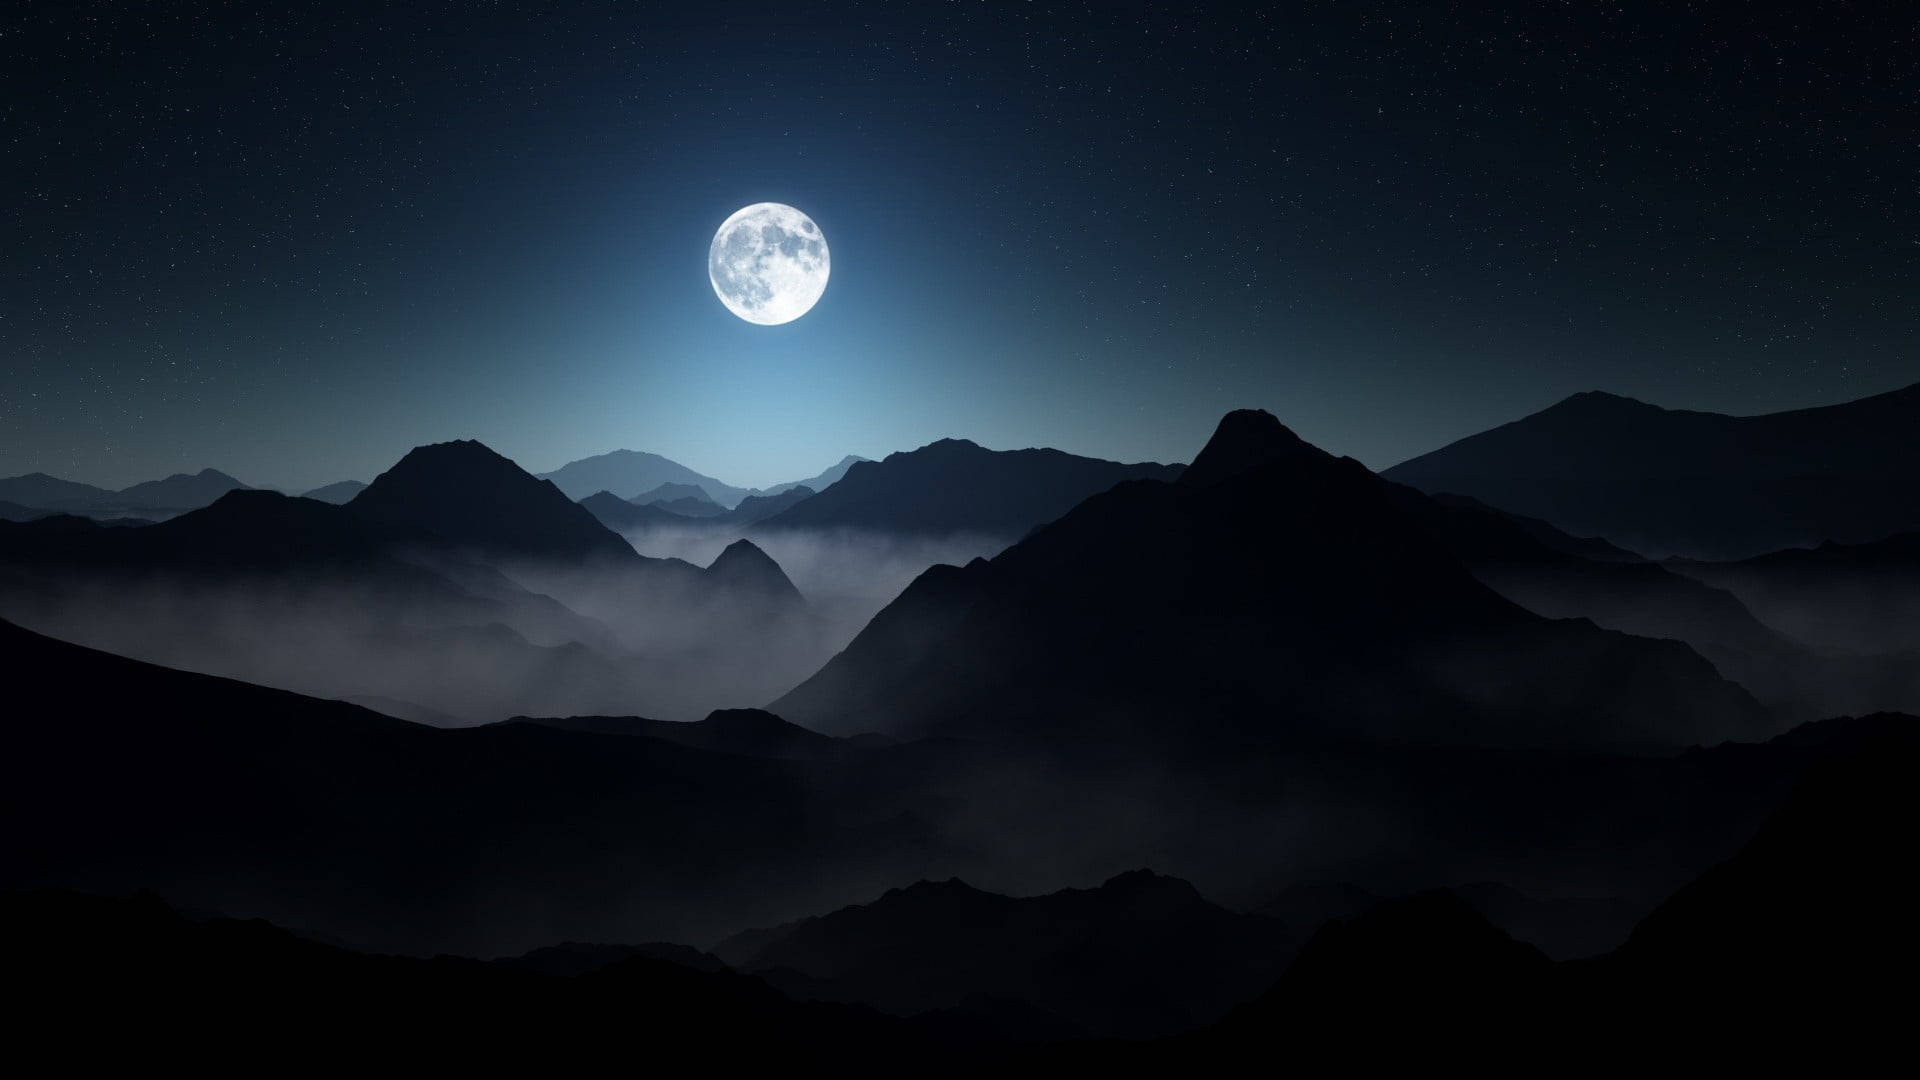 Dark Laptop Moon In Mountains At Night Wallpaper